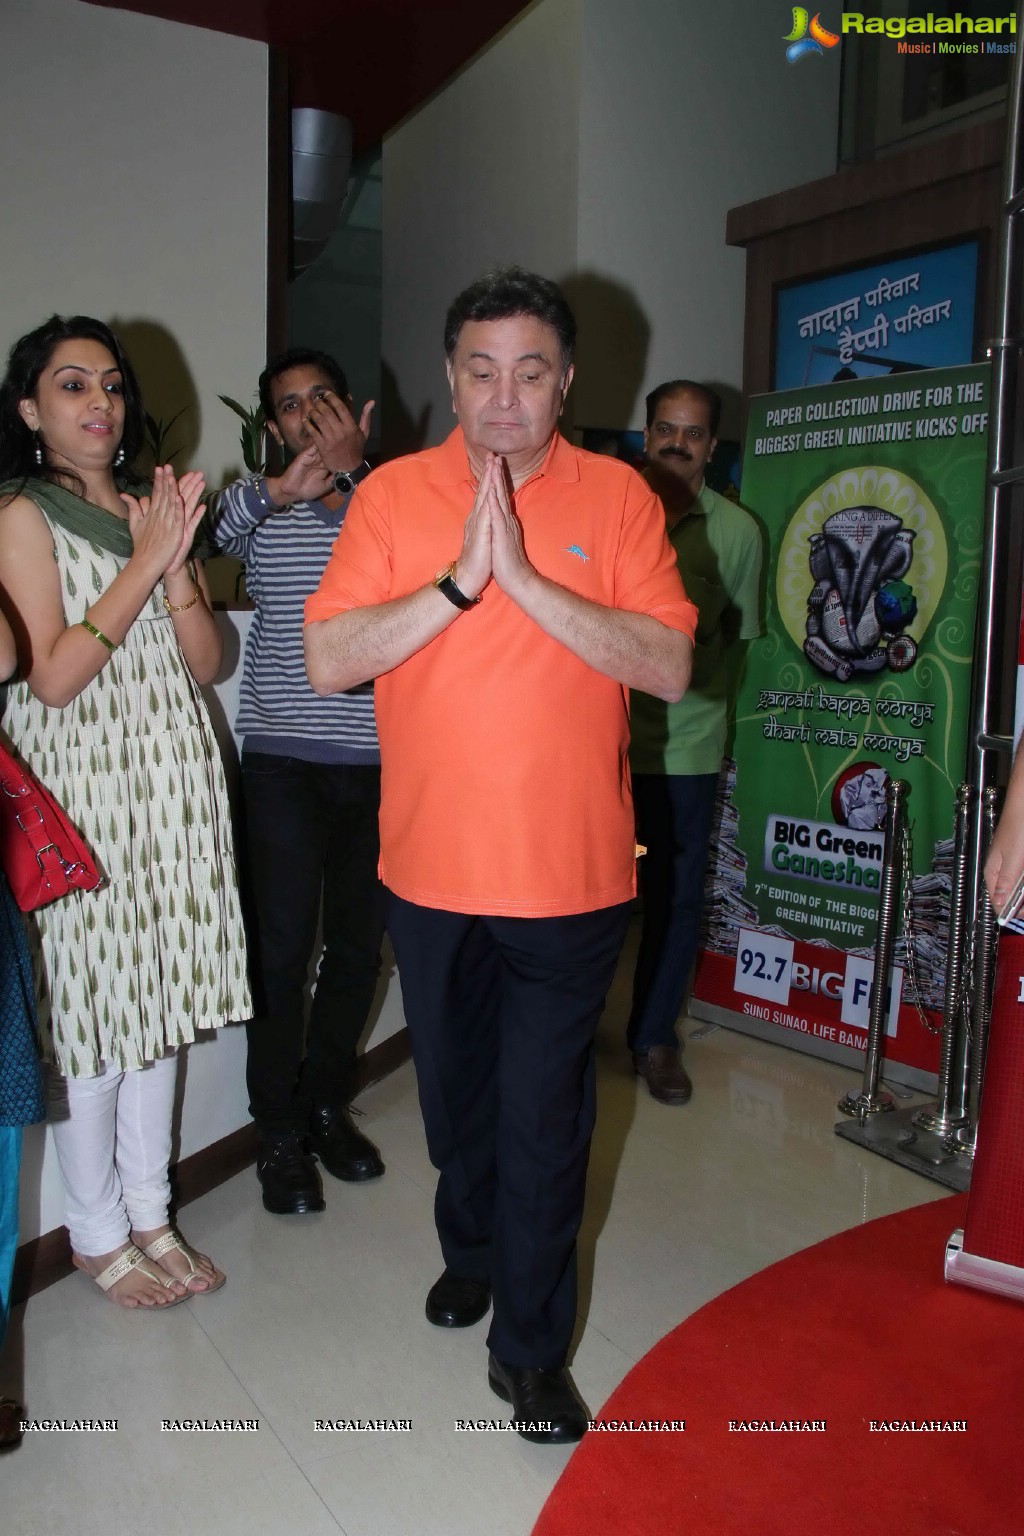 Rishi Kapoor Celebrates his Birthday with 92.7 BIG FM Radio Station, Mumbai